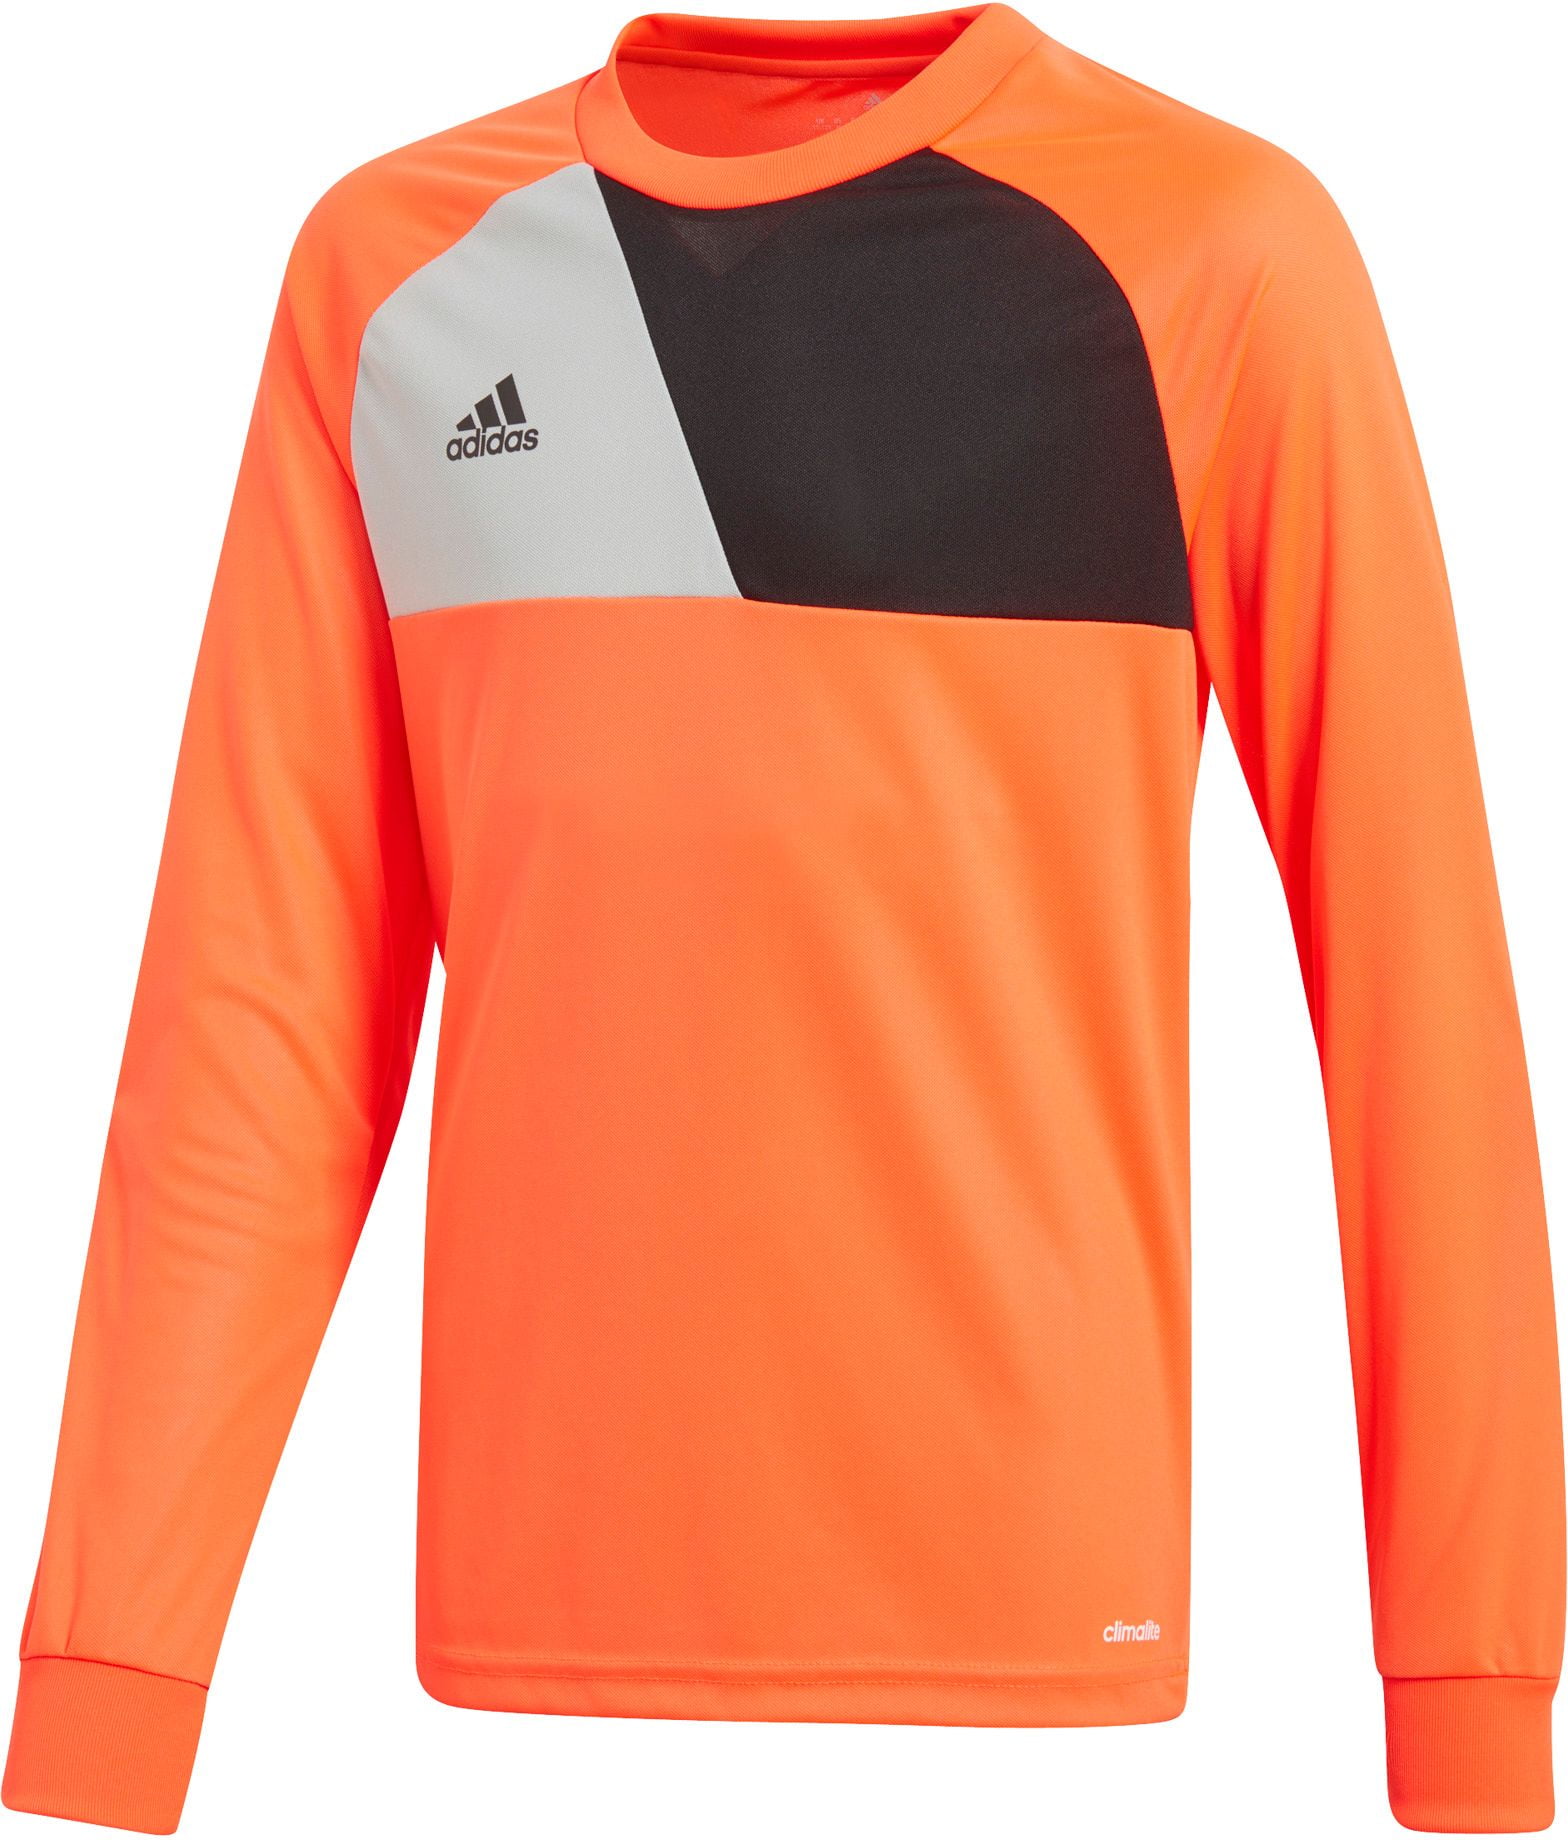 Adidas Boys' Assita 17 Goalkeeper Long Sleeve Jersey - Walmart.com